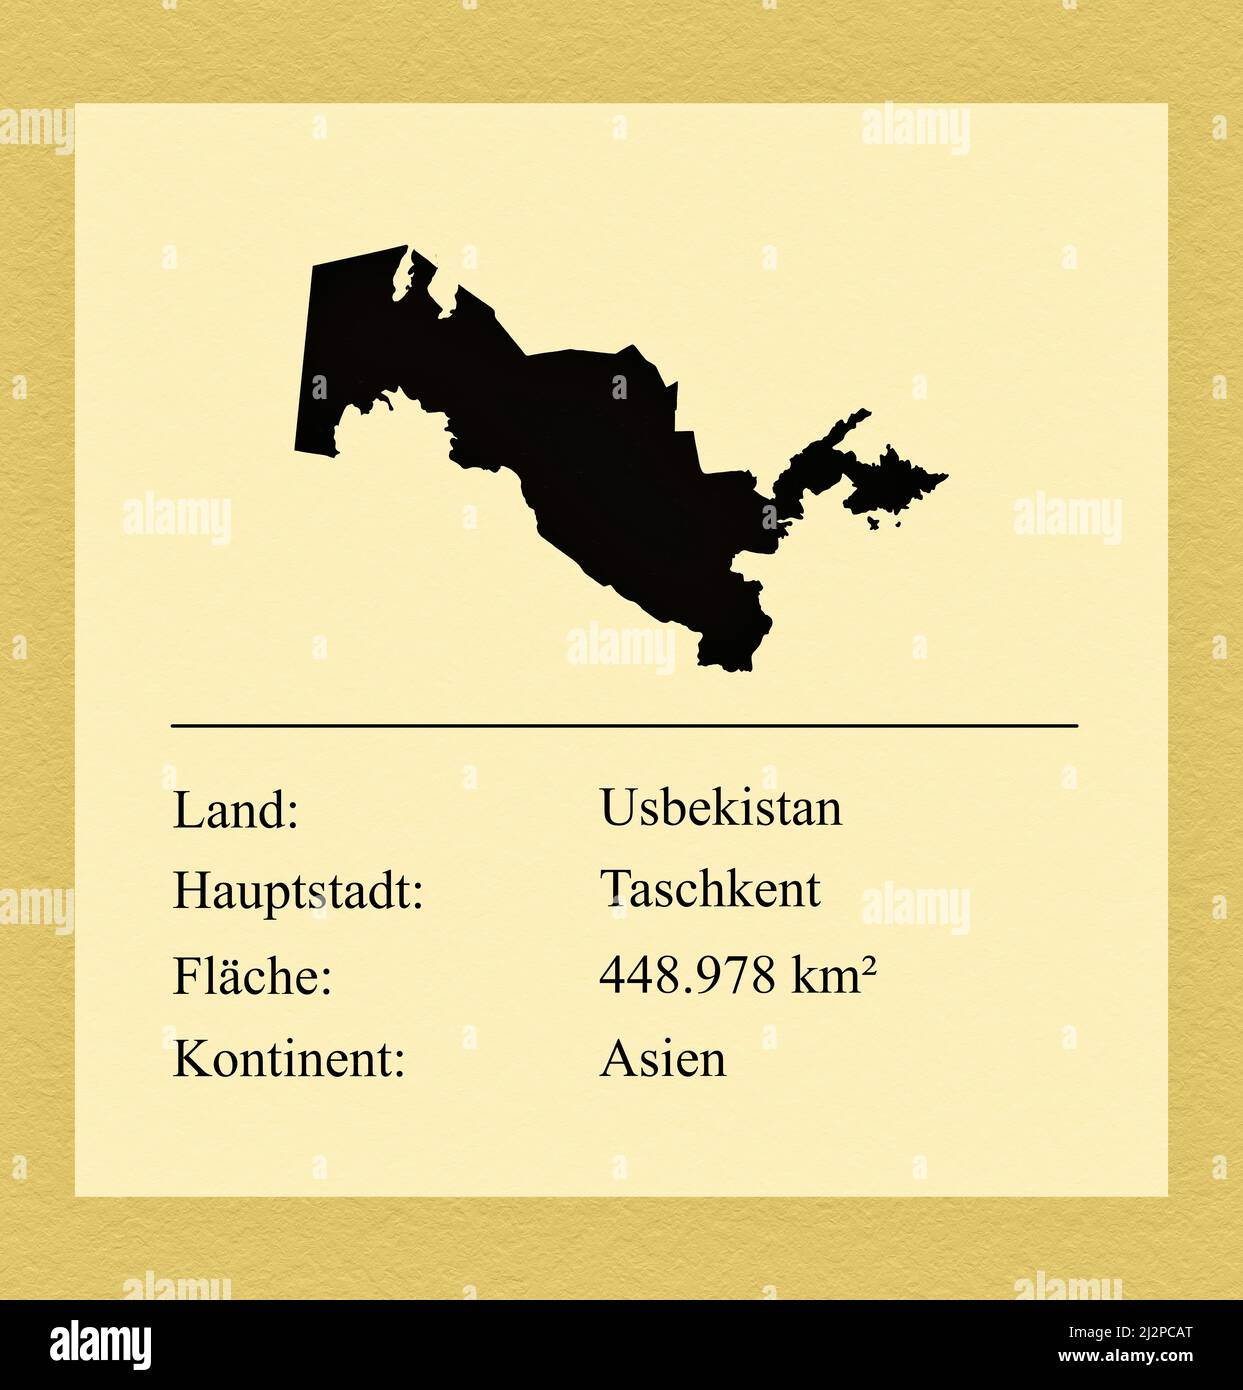 Umrisse des Landes Usbekistan, darunter ein kleiner Steckbrief mit Ländernamen, Hauptstadt, Fläche und Kontinent Stock Photo